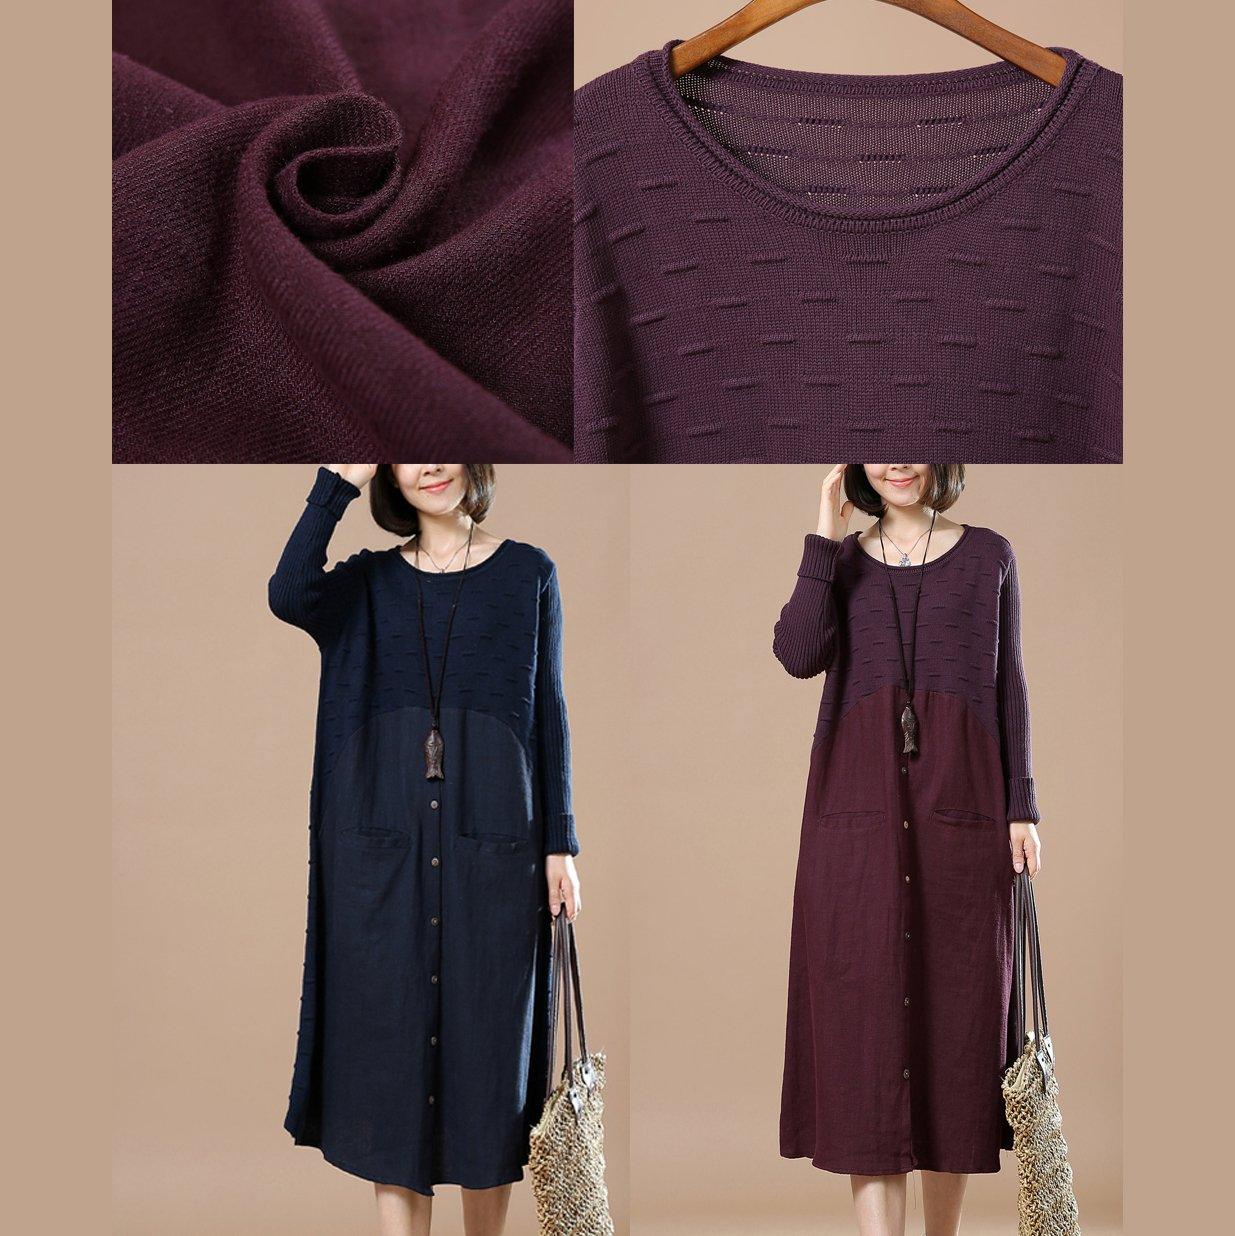 new purple split knit sweaters long maxi dress - Omychic